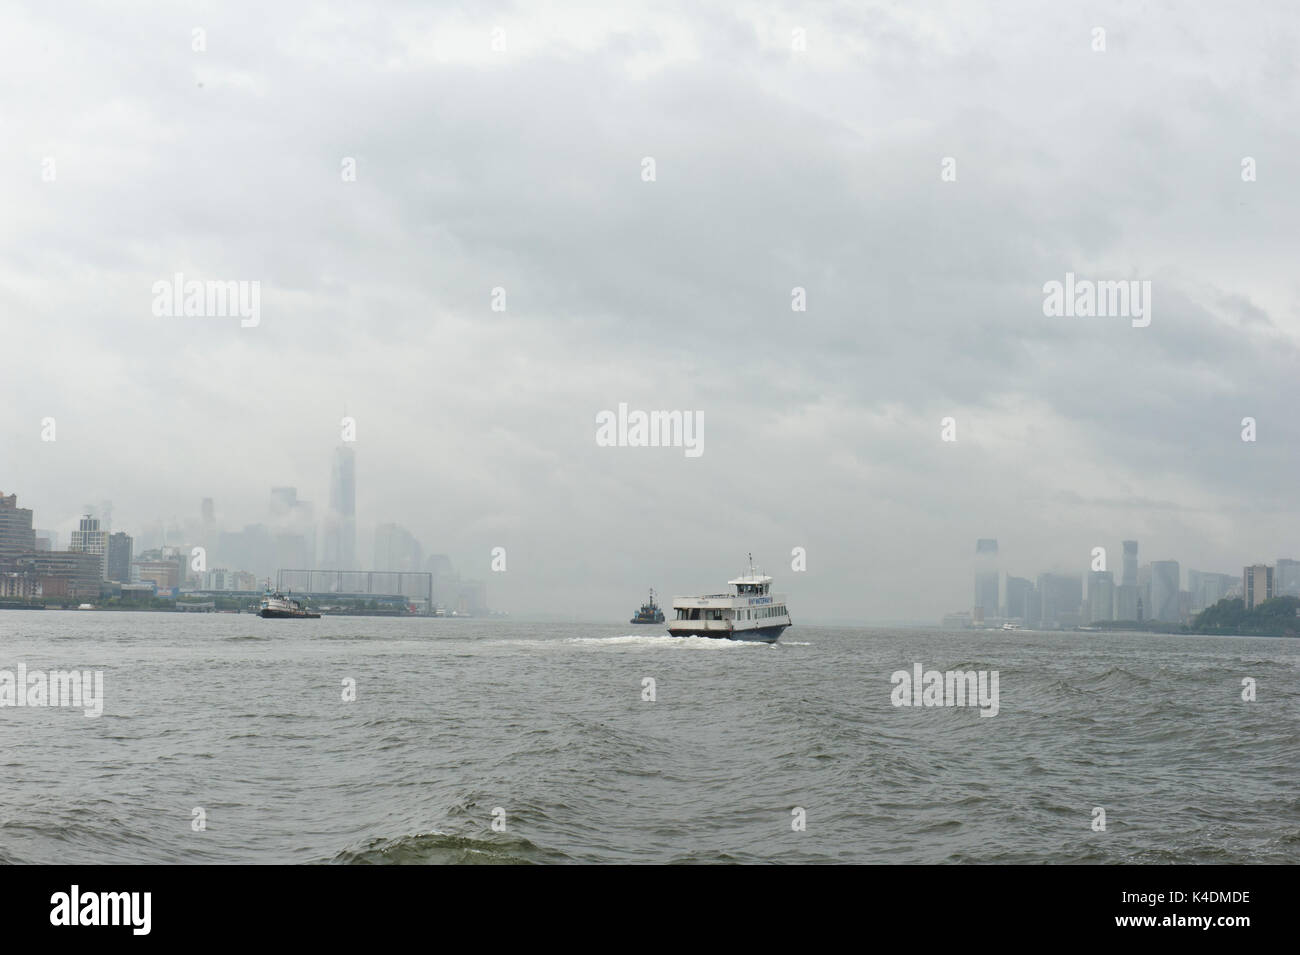 Ein New York Waterway ferry Geschwindigkeiten über den Hudson River Vergangenheit Jersey City und Lower Manhattan an einem regnerischen Tag Anfang September. Stockfoto